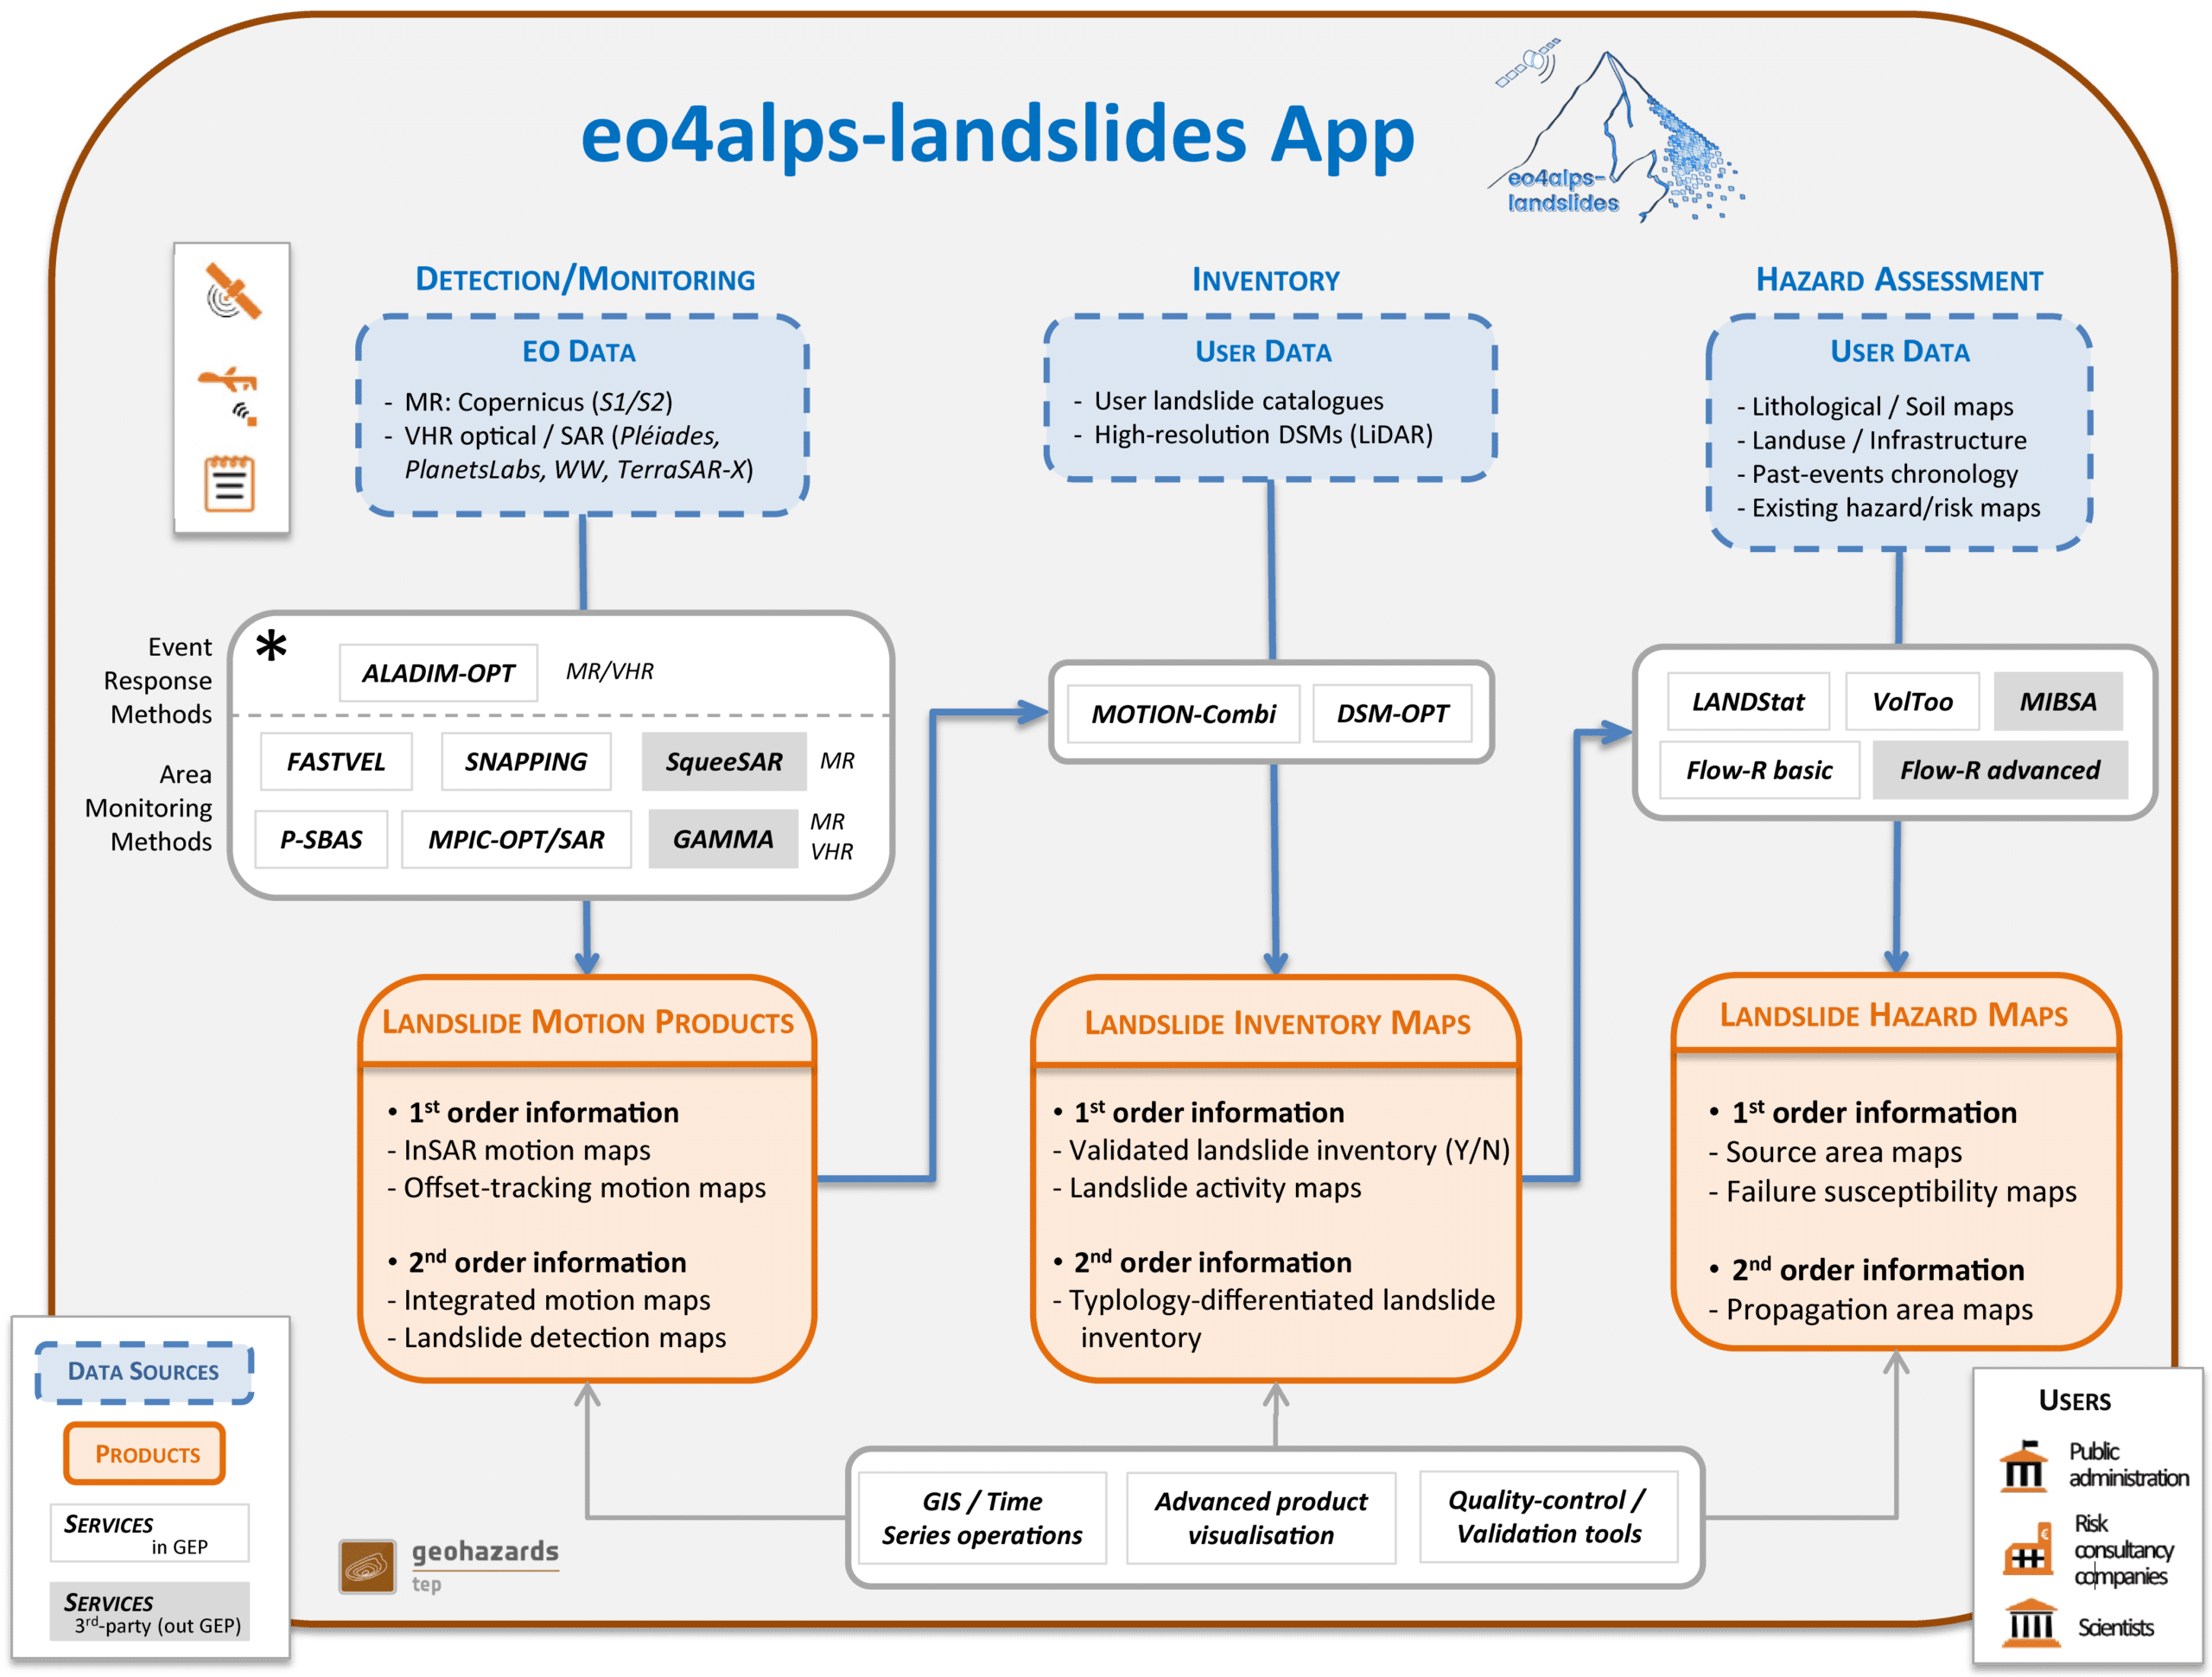 eo4alps-landslides App - Concept